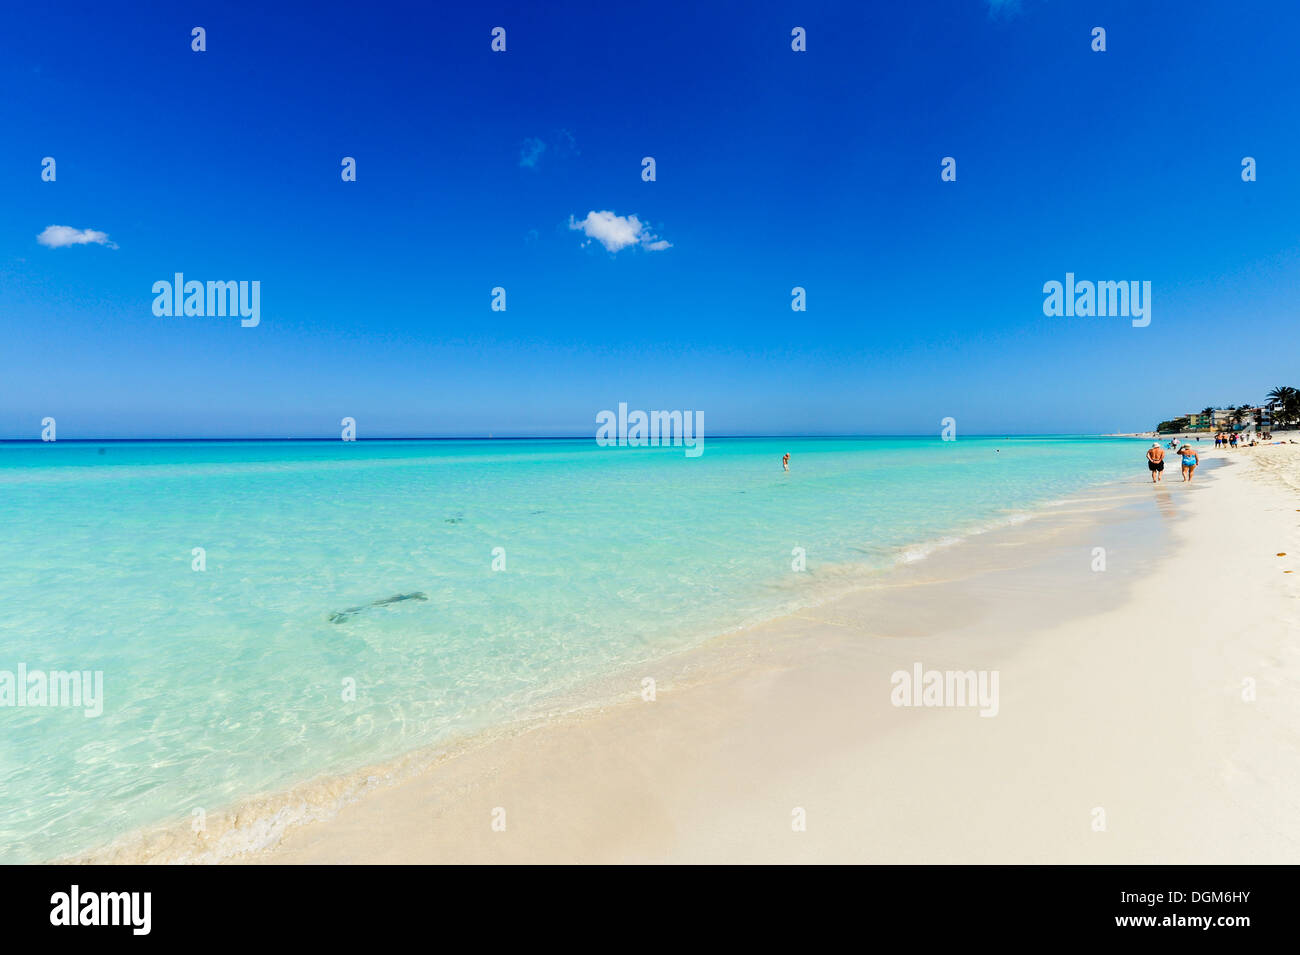 Cuba Varadero beach Stock Photo